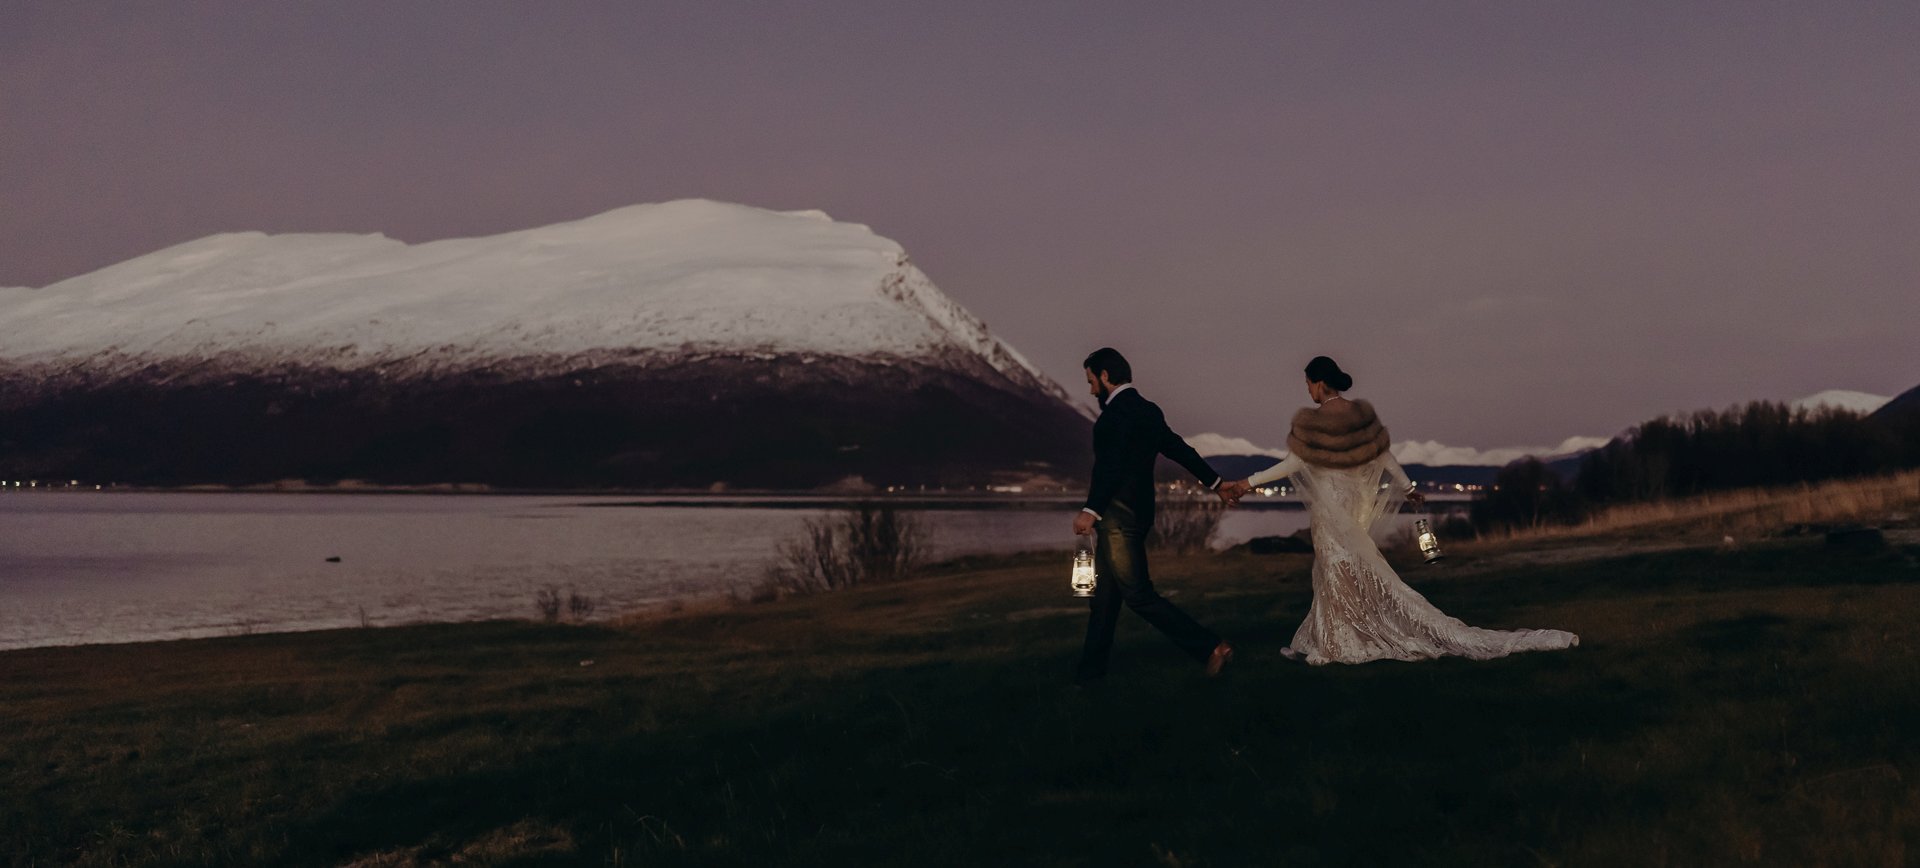 fairytale wedding in the arctic - norway elopement